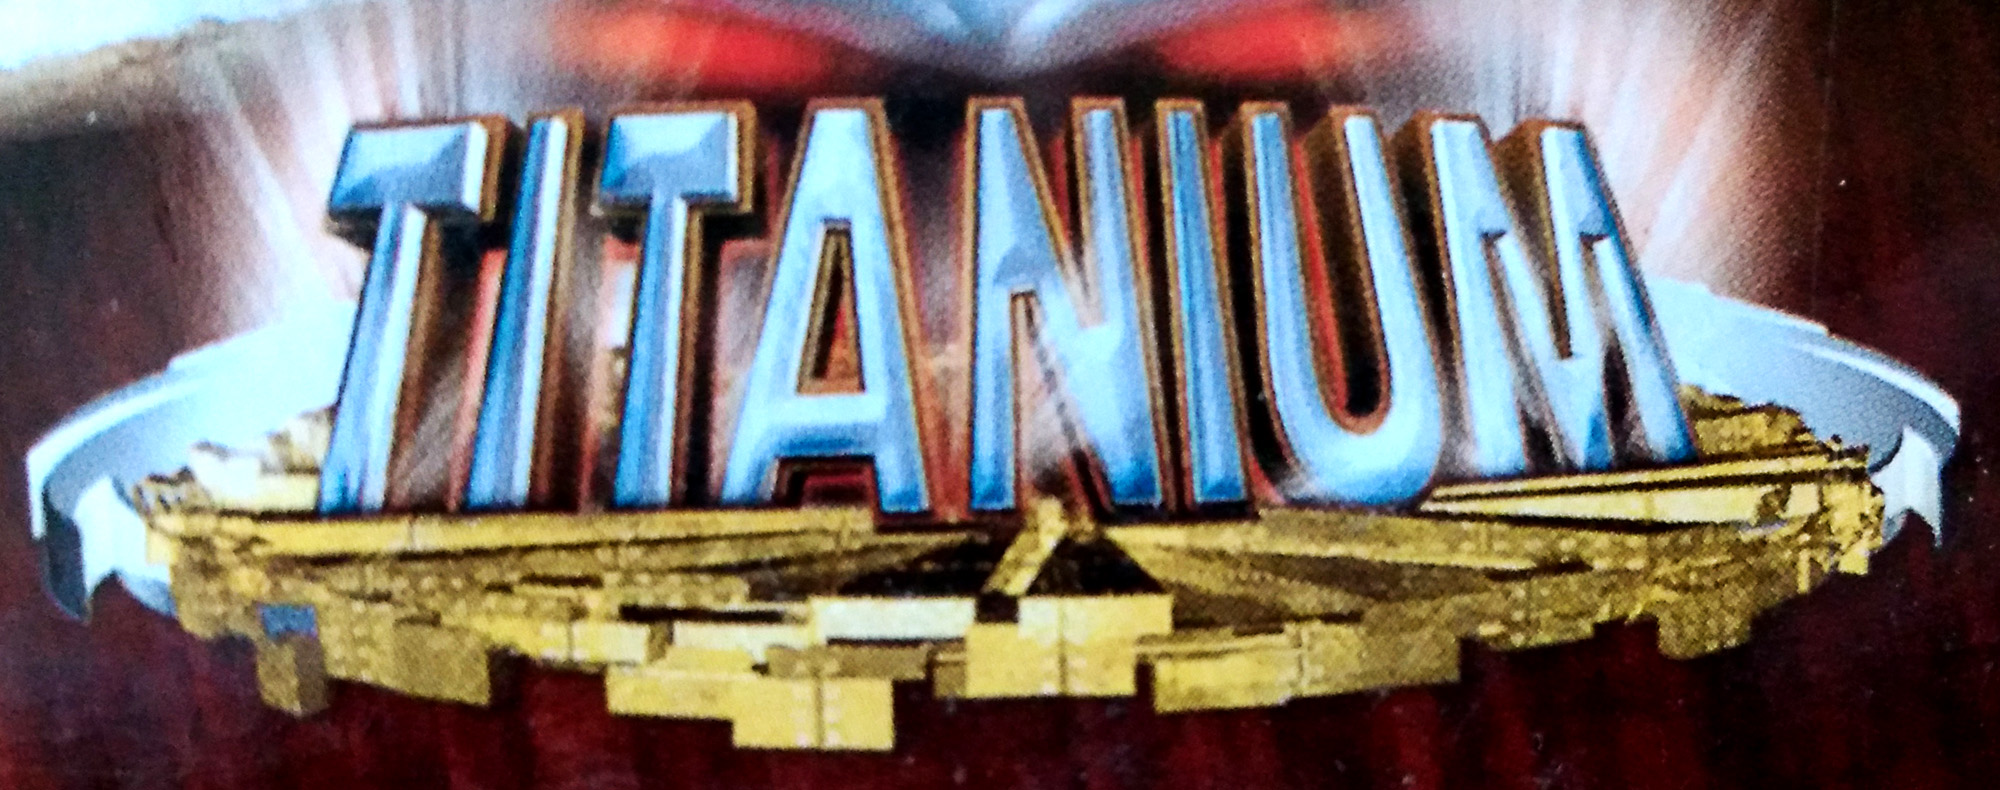 Titanium - Wikipedia